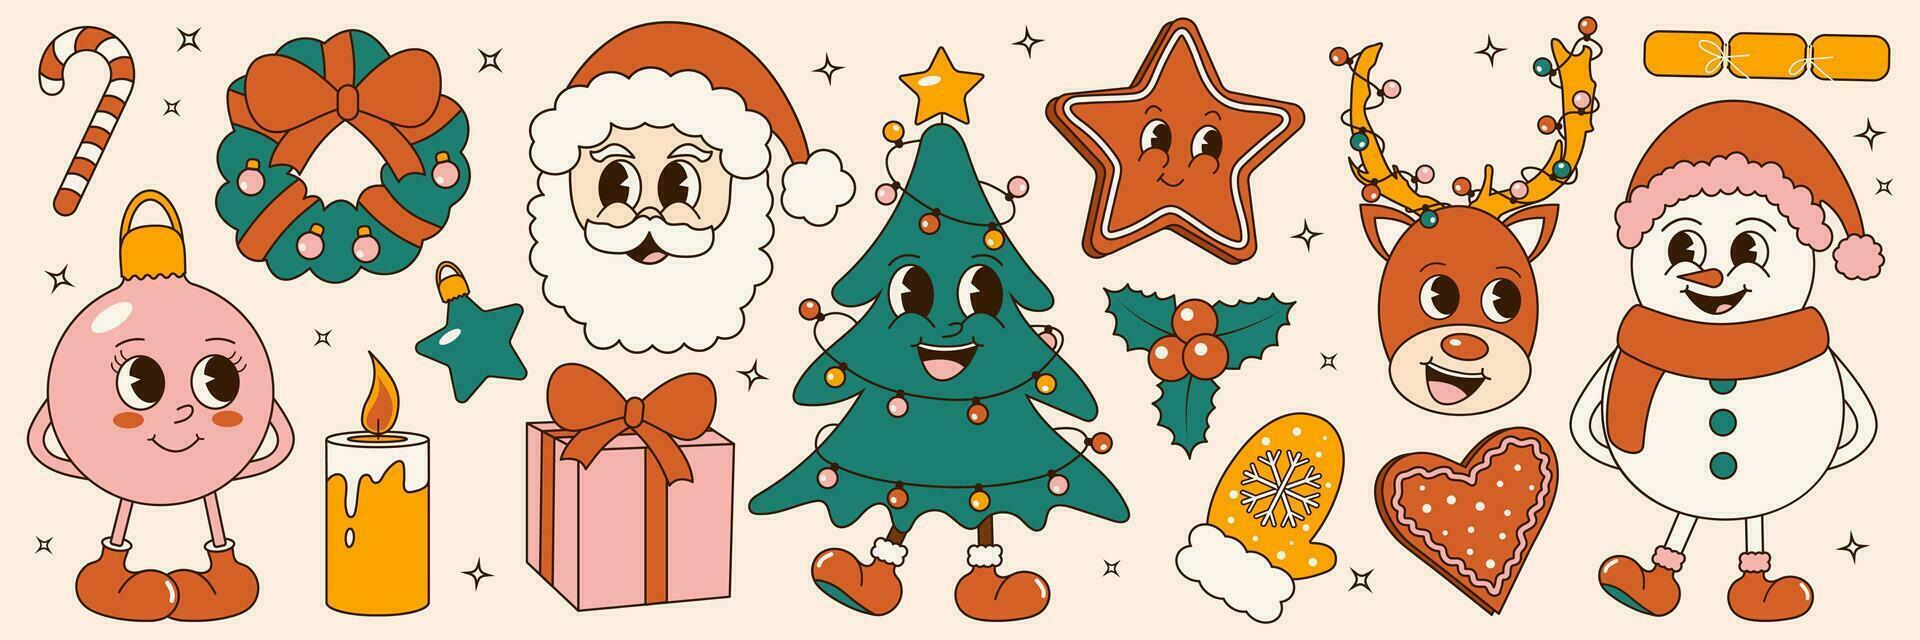 groovig 70er Jahre Weihnachten Aufkleber Satz. modisch retro Karikatur Stil. Comic Karikatur Zeichen und Elemente. Weihnachten Baum, Schneemann, Lebkuchen, Santa vektor